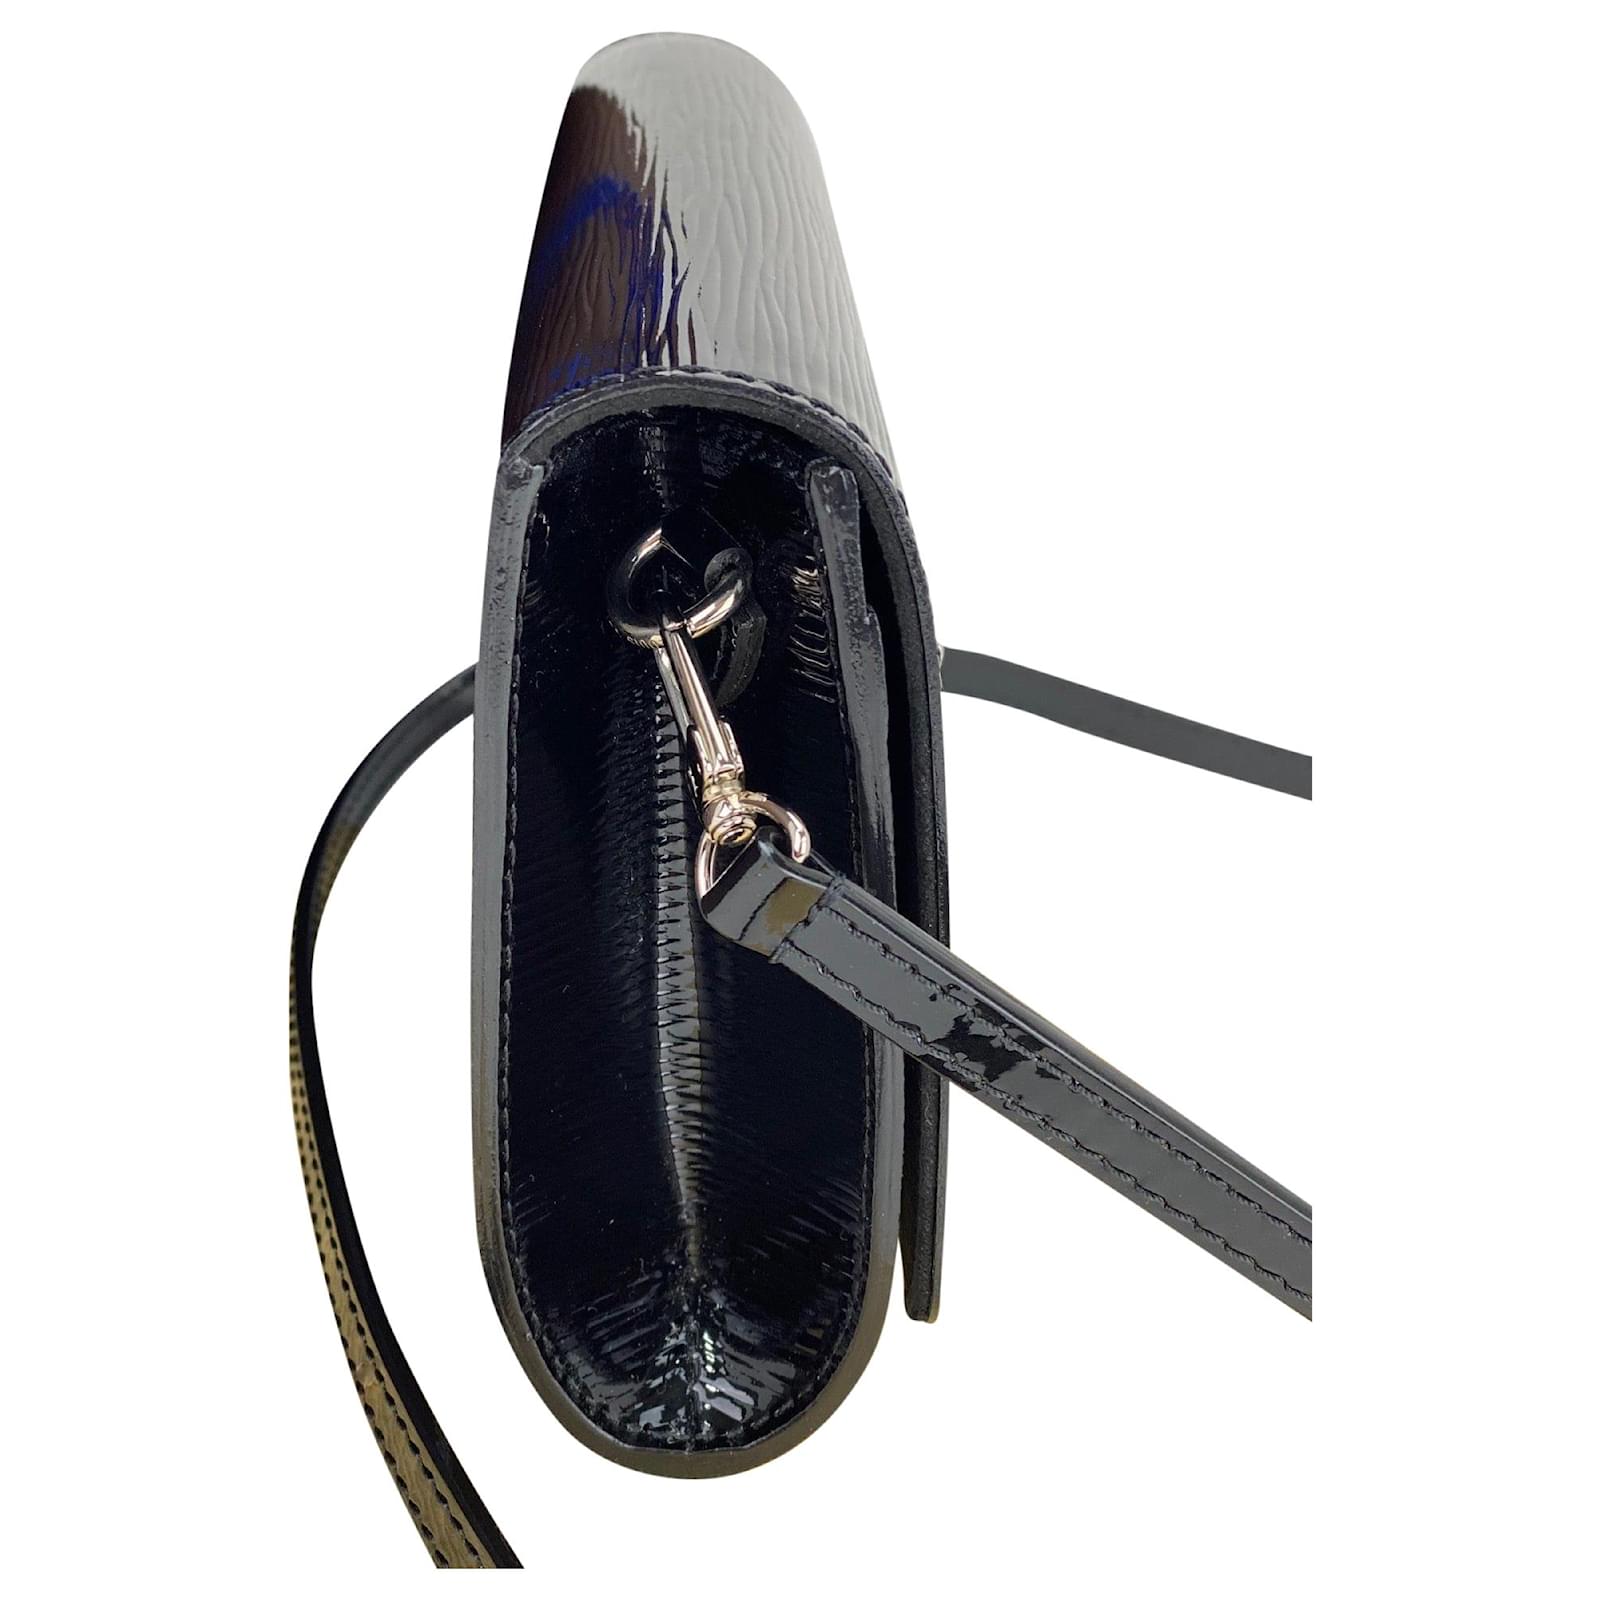 Louis Vuitton Bag Louise Pm Epi Electric Black Leather Shoulder Clutch Woc  A849